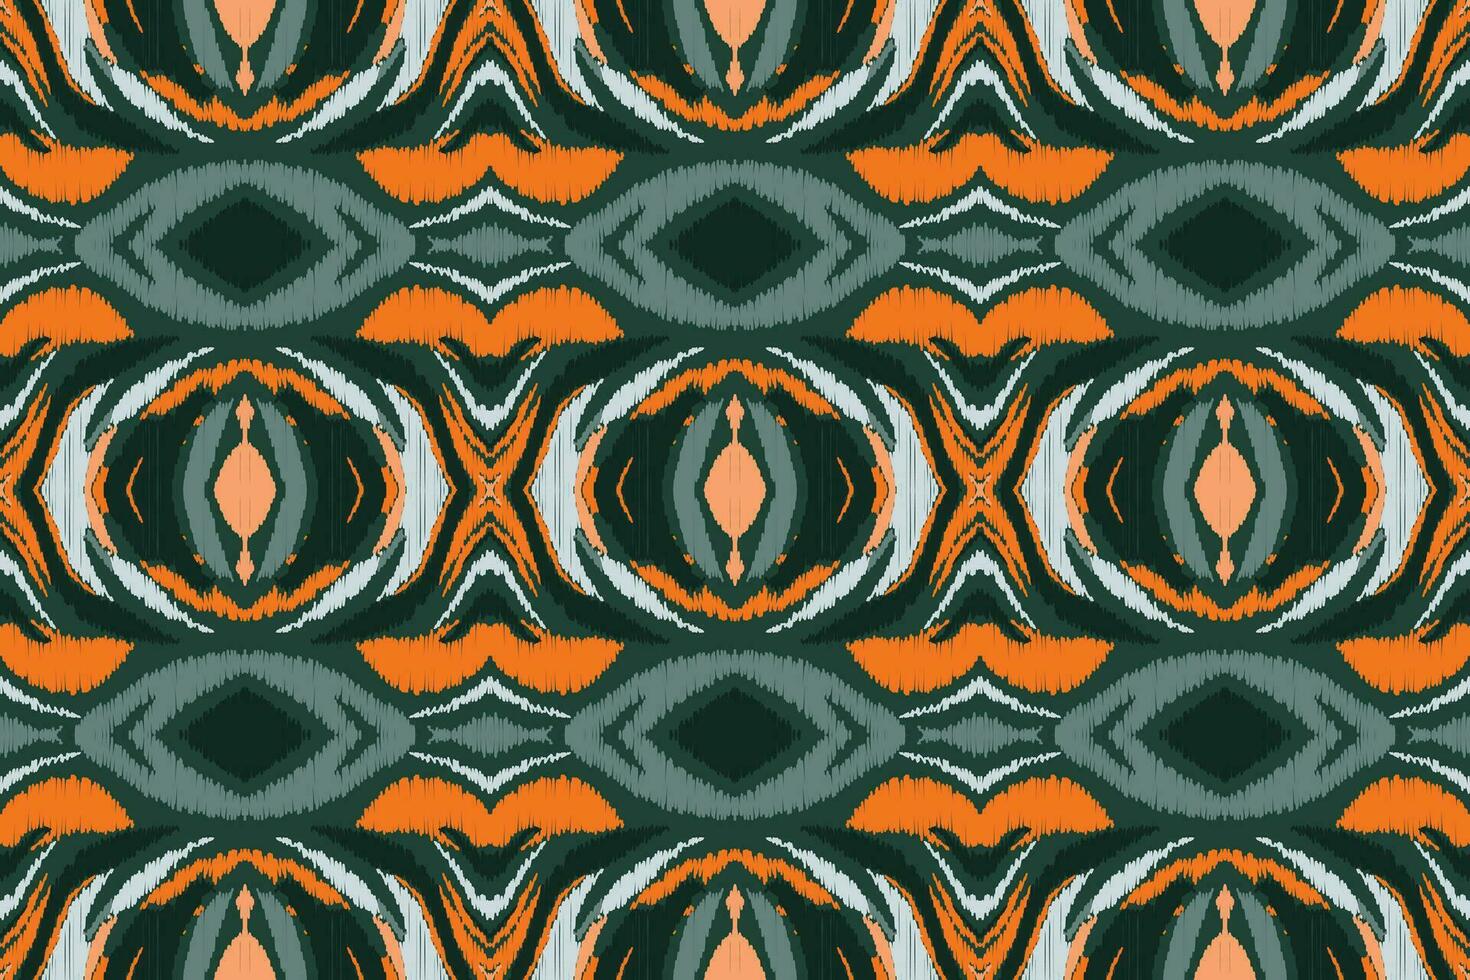 ikat floral paisley bordado fundo. ikat listras geométrico étnico oriental padronizar tradicional.asteca estilo abstrato vetor ilustração.design para textura,tecido,vestuário,embrulho,sarongue.